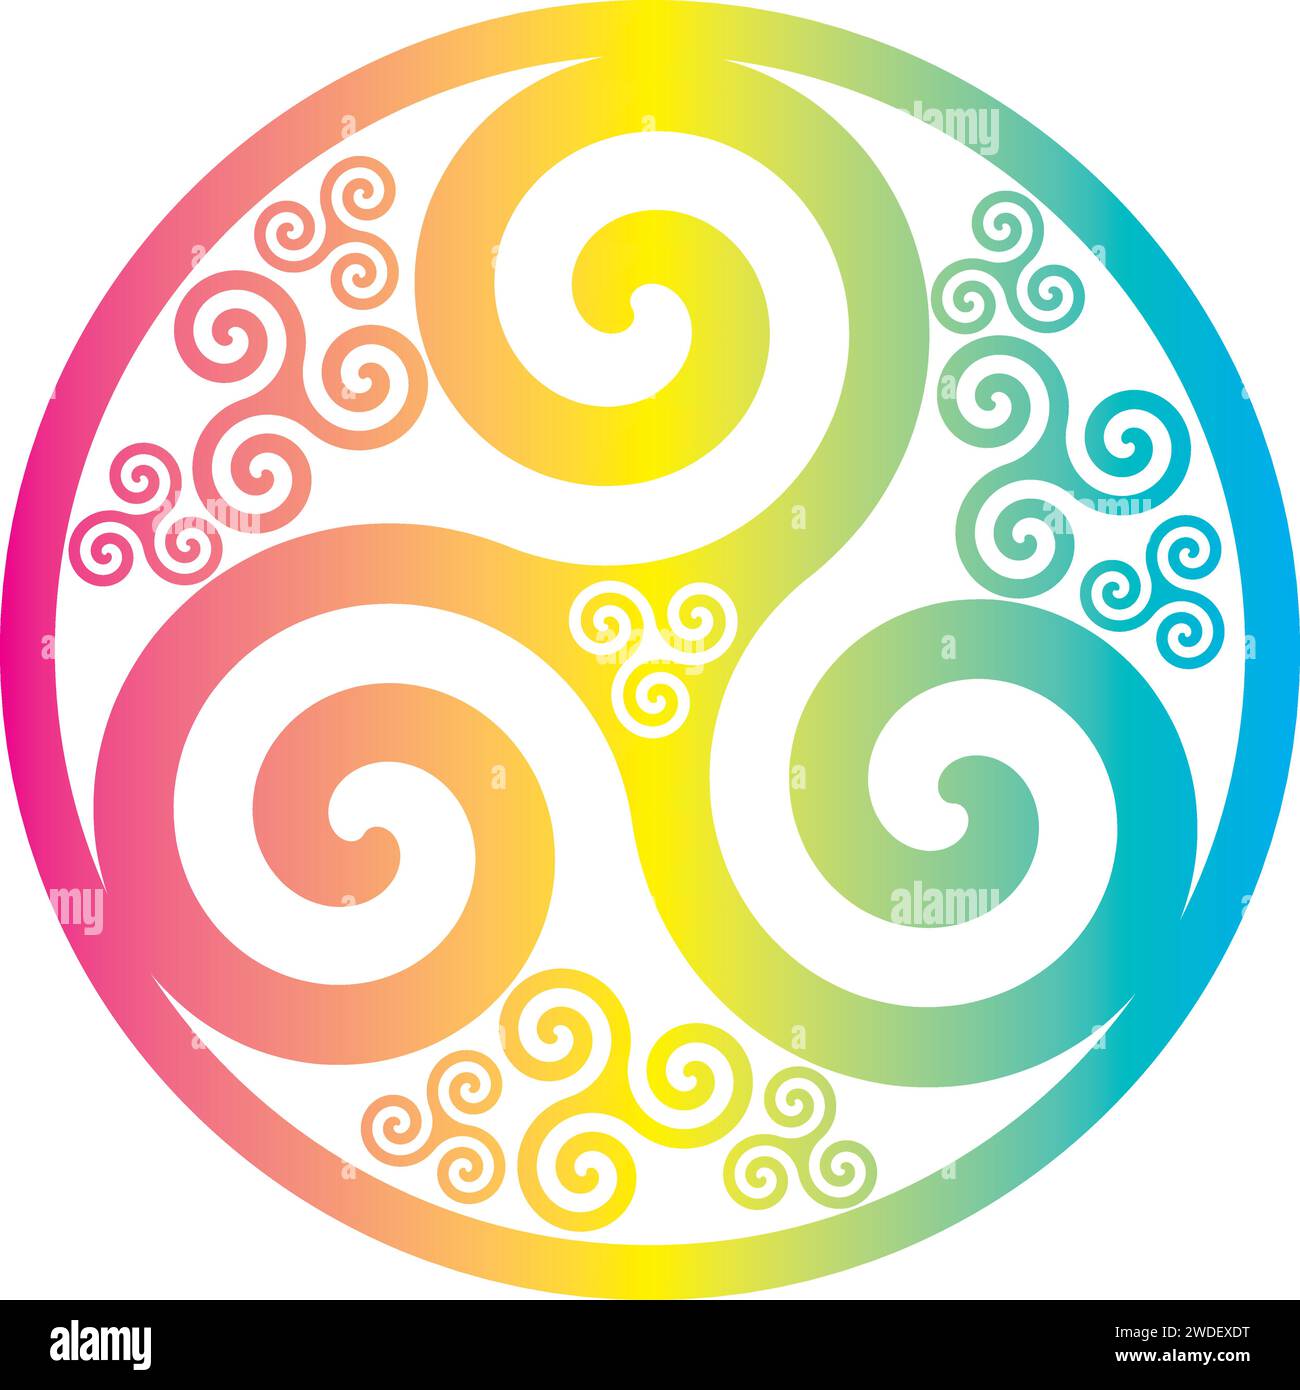 Symbole celtique nœud celtique cercle Triskelion Trinité géométrie Sacrée énergie - couleurs arc-en-ciel Illustration de Vecteur